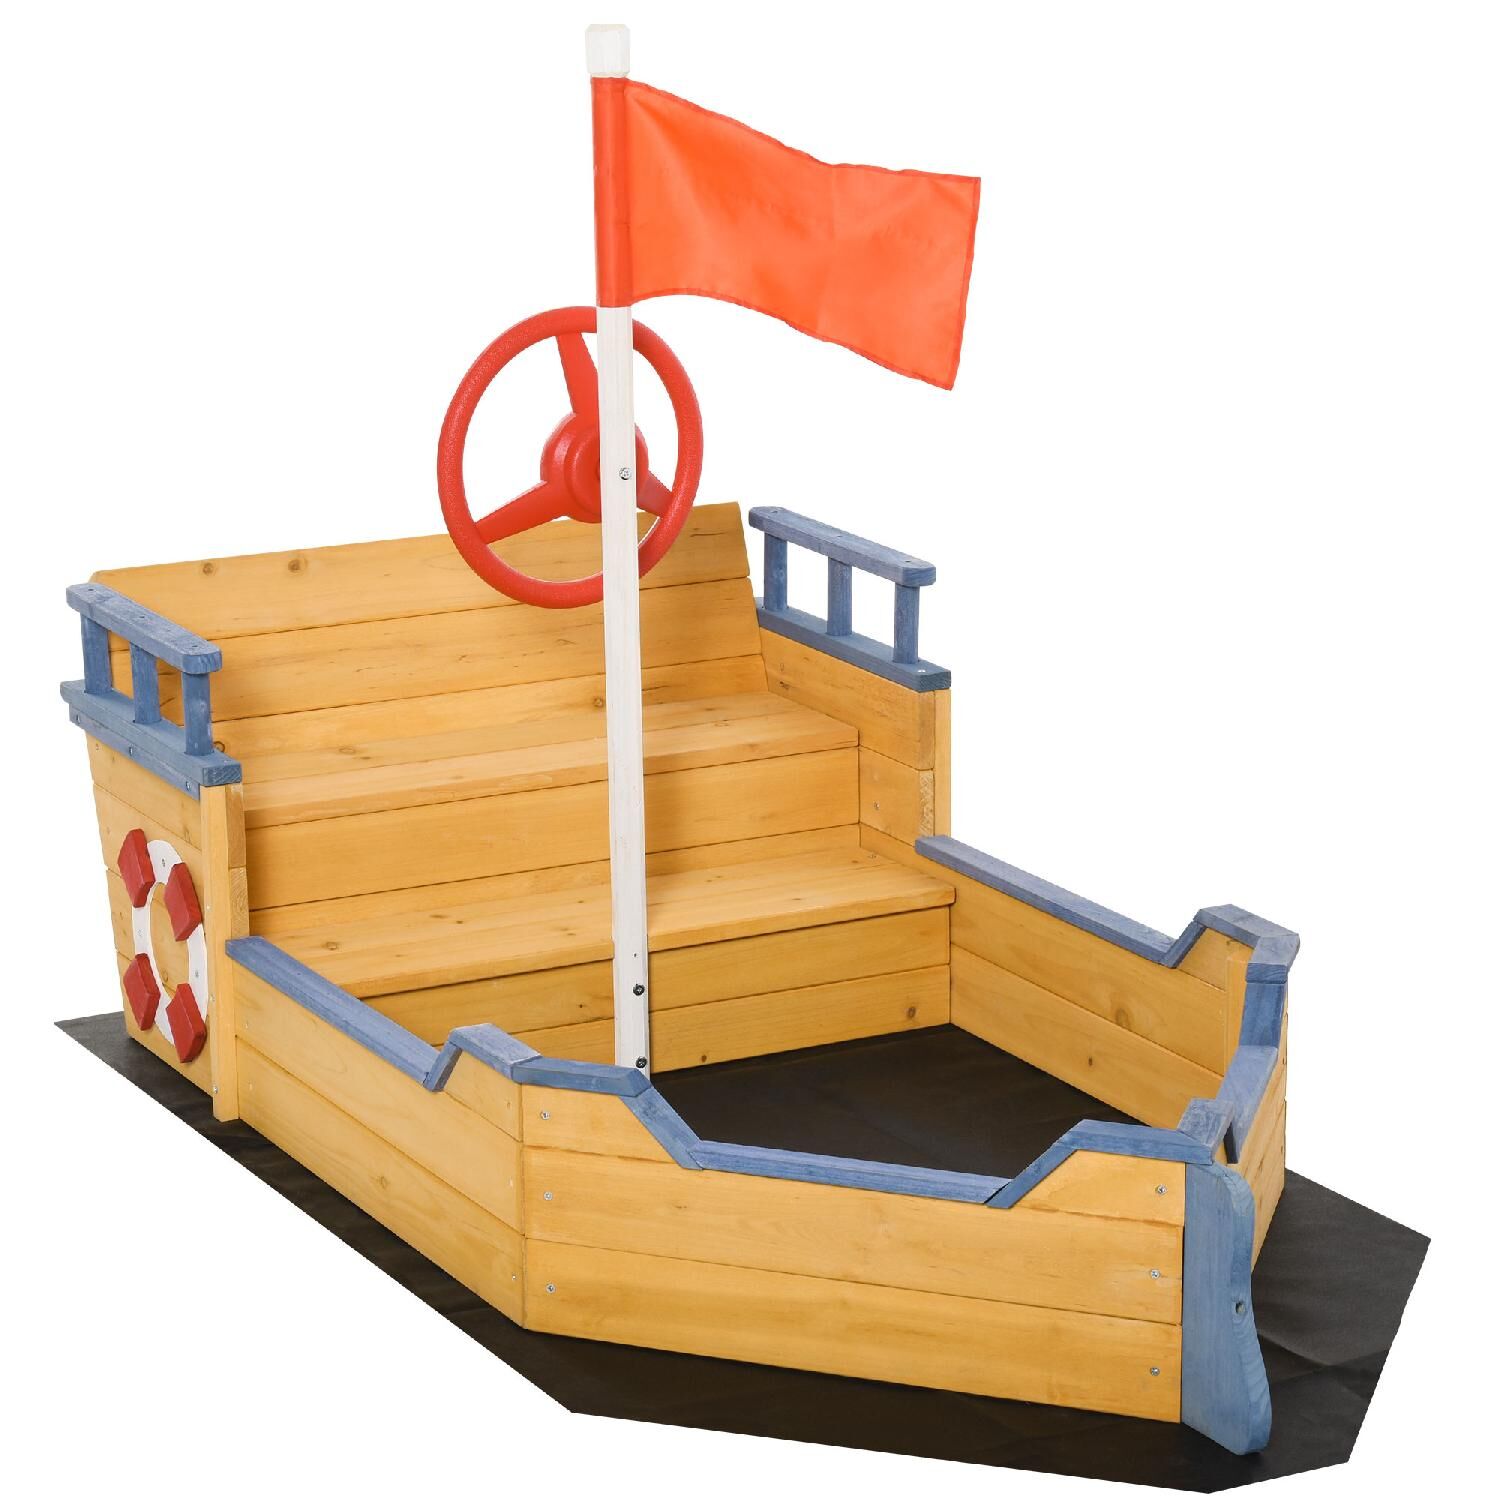 dechome 022v01343 sabbiera per bambini in legno a forma di nave dei pirati con vano contenitore 158x78x45.5cm - 022v01343